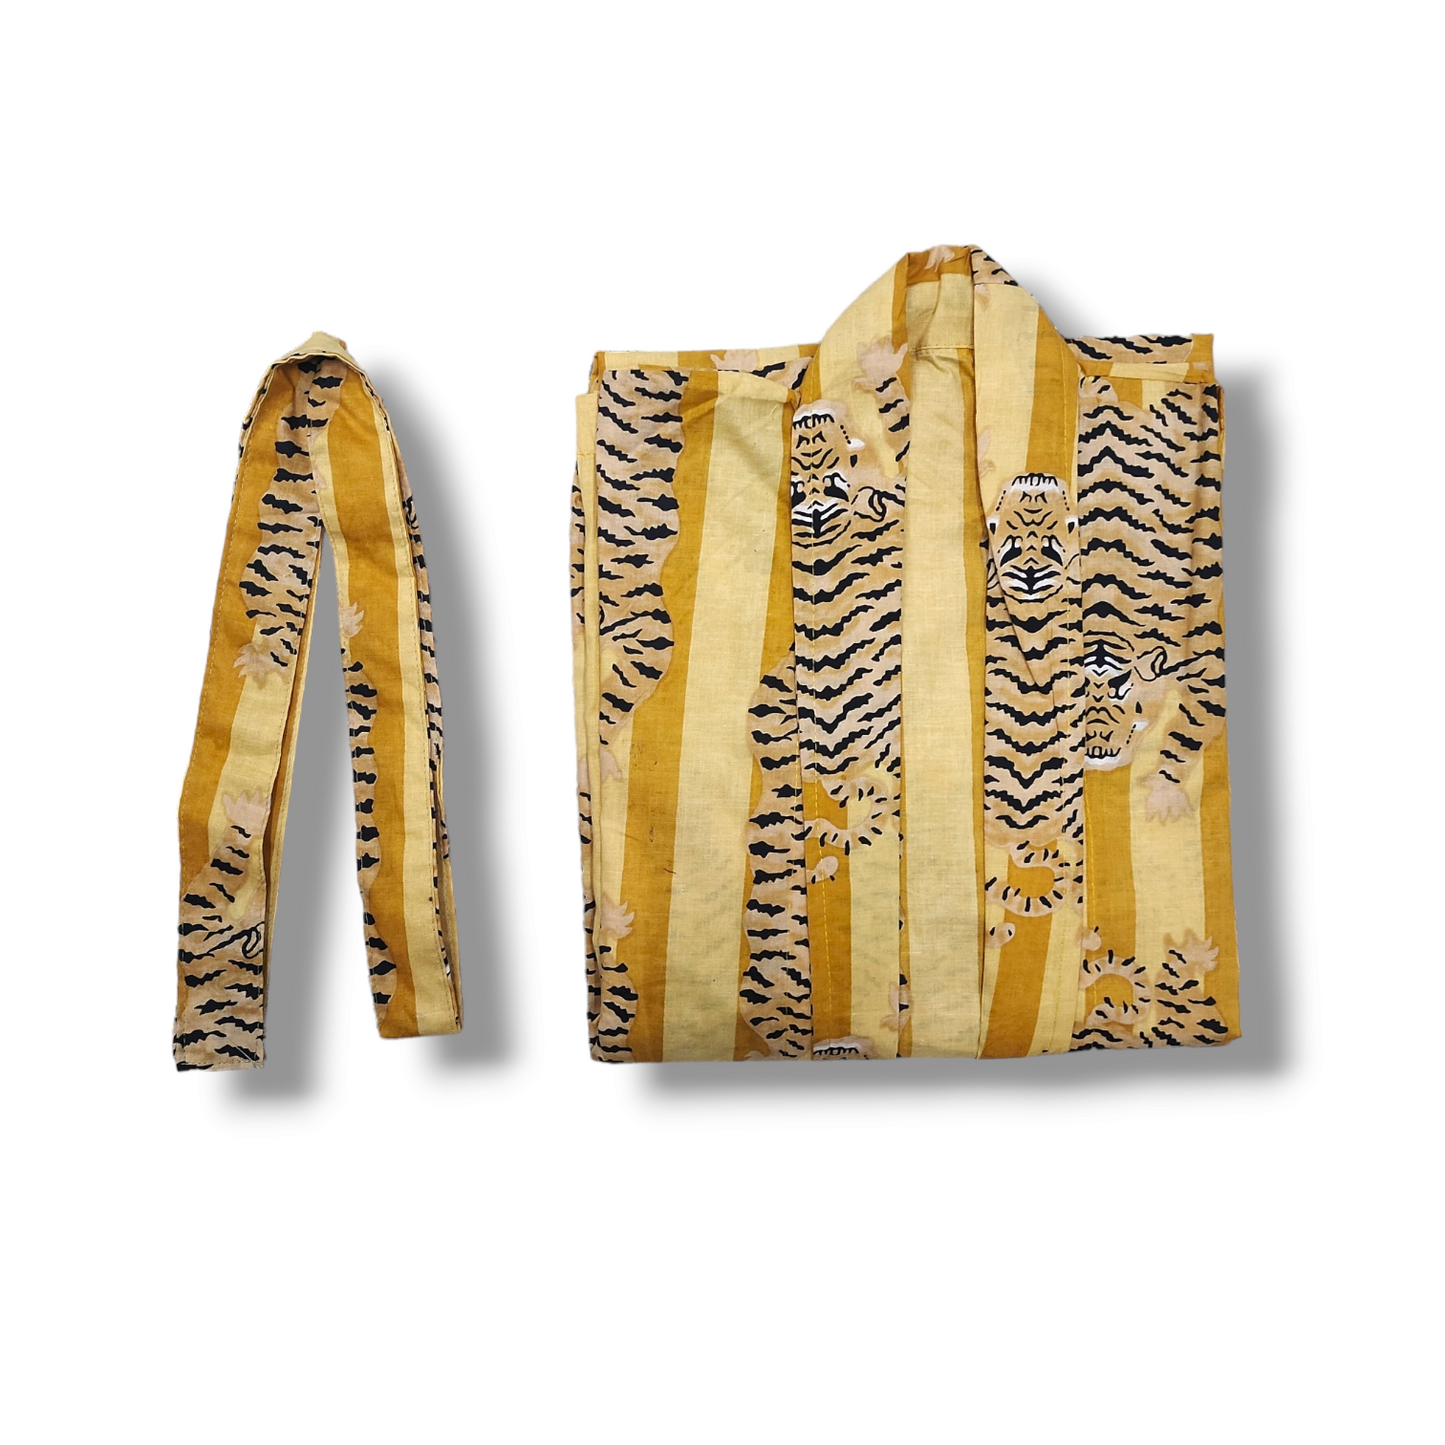 Cotton Hand Printed Kimono Robe Tiger Stripes Yellow